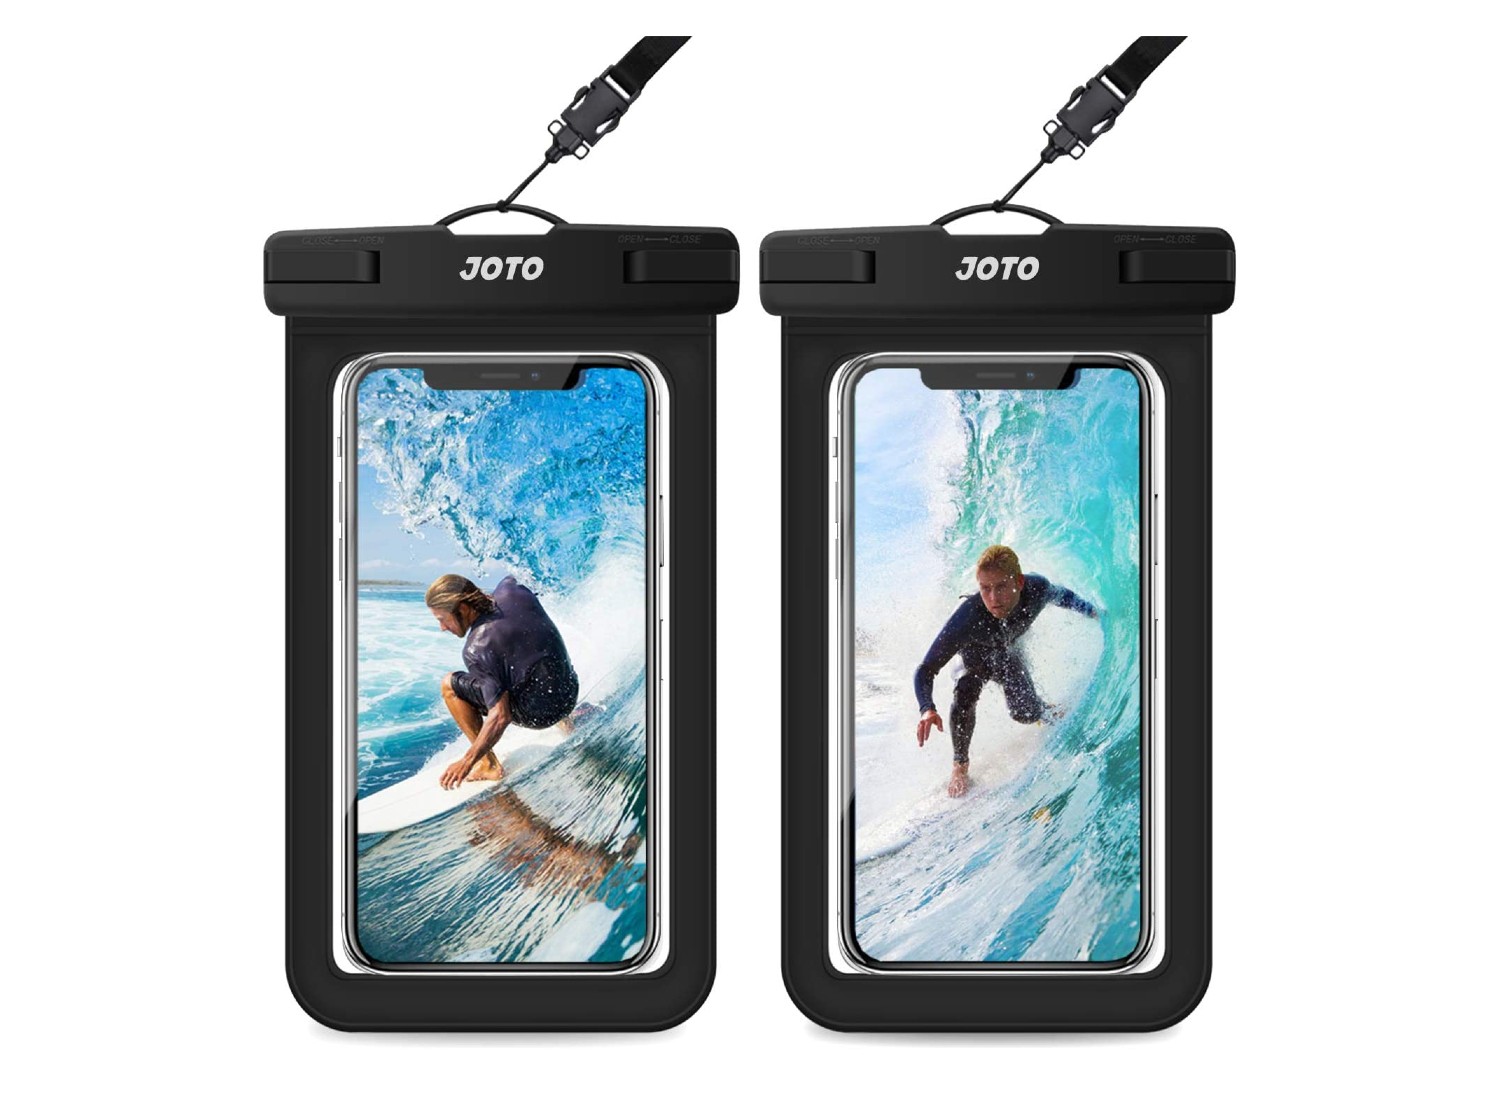 waterproof phone case reviews